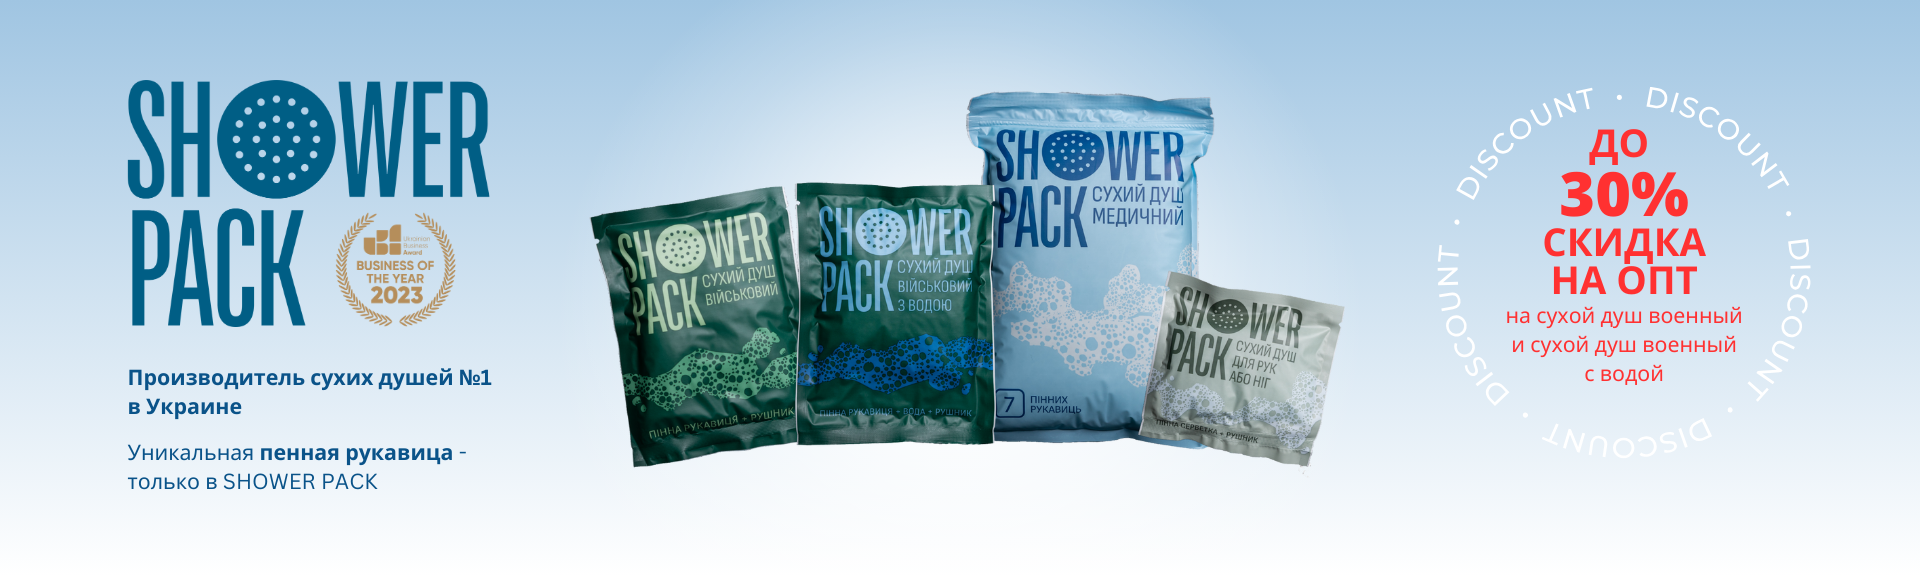 Shower pack - український виробник сухих душів №1 в Україні